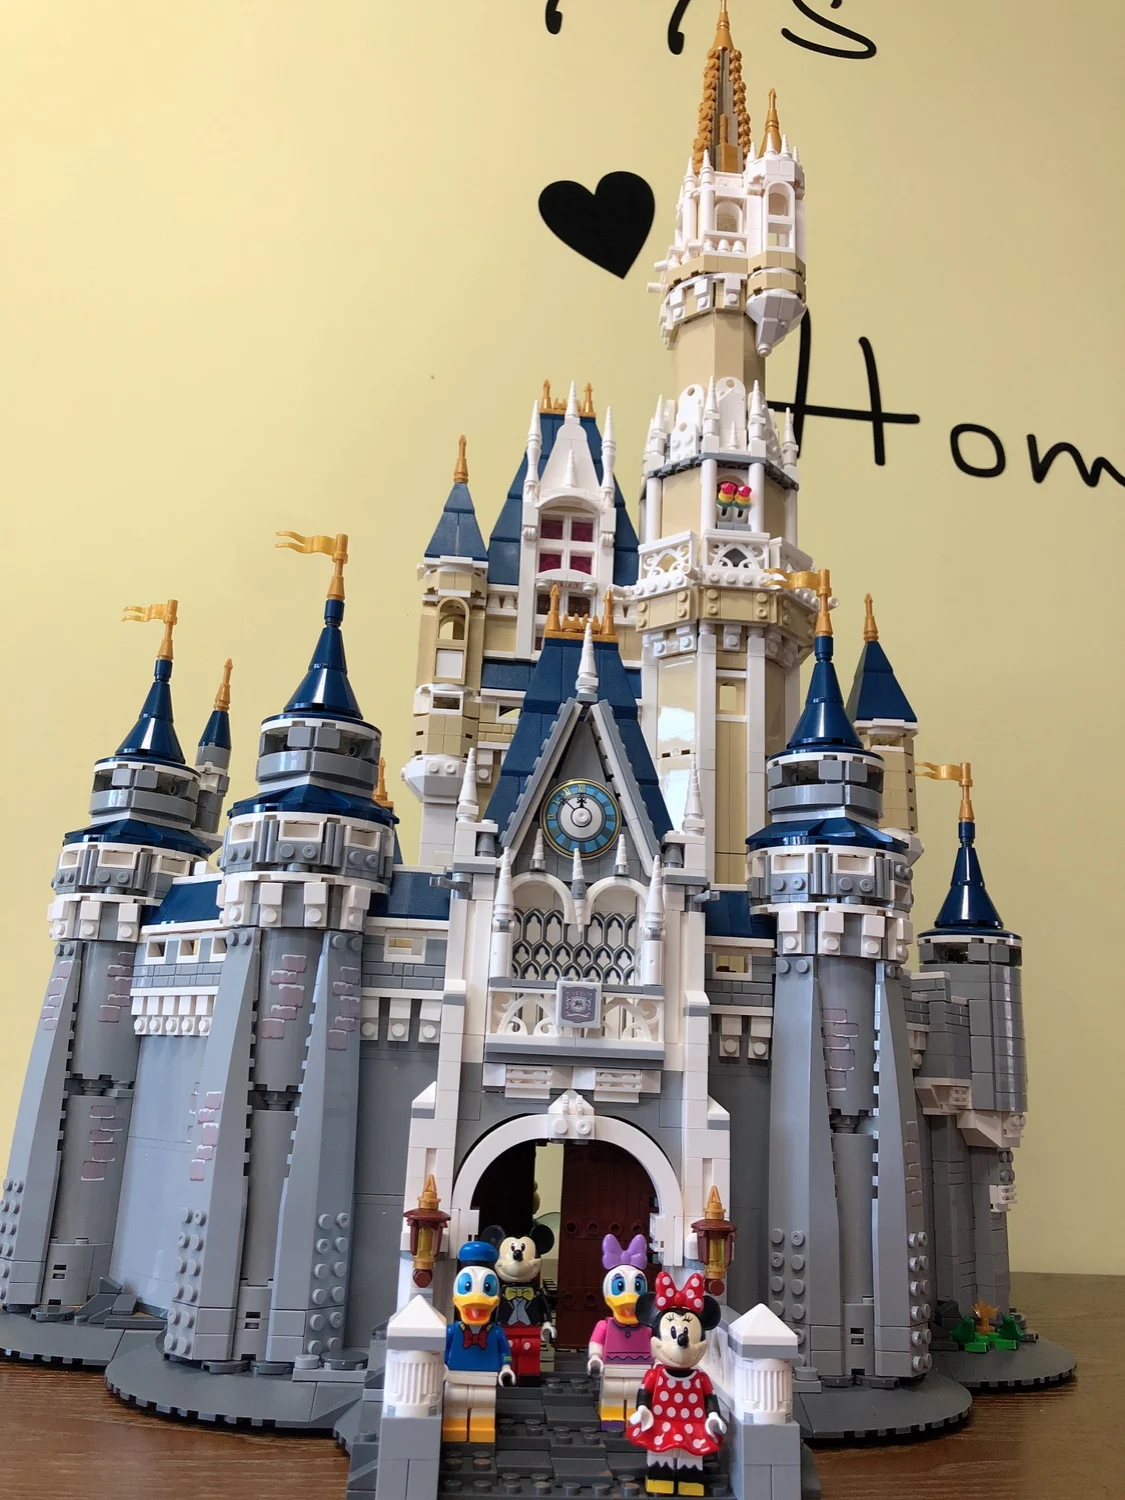 8388 шт. Принцесса замок город набор модель строительные блоки Дети DIY игрушки смешной день рождения совместимы 71040 16008 кирпичи